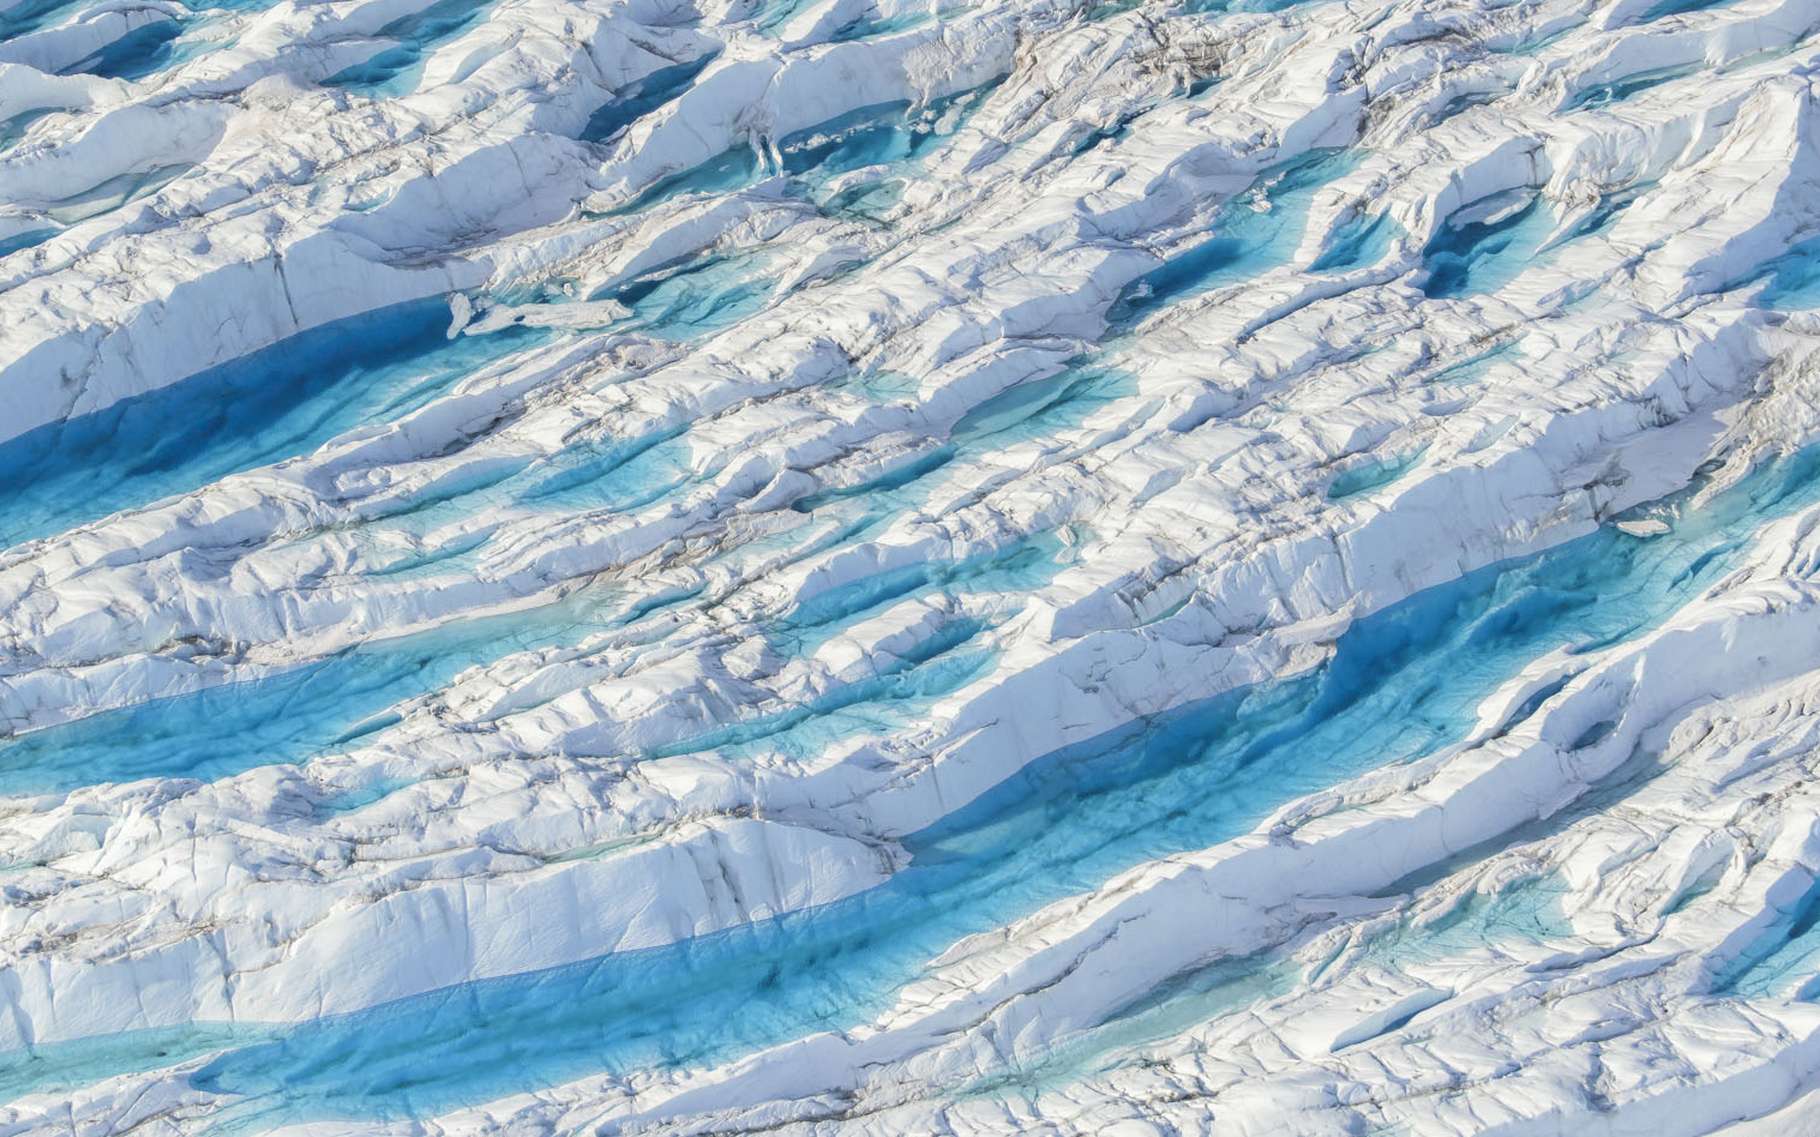 Crevasse remplie d’eau sur l’inlandsis au-dessus du glacier Eqi. © Florian Ledoux, tous droits réservés